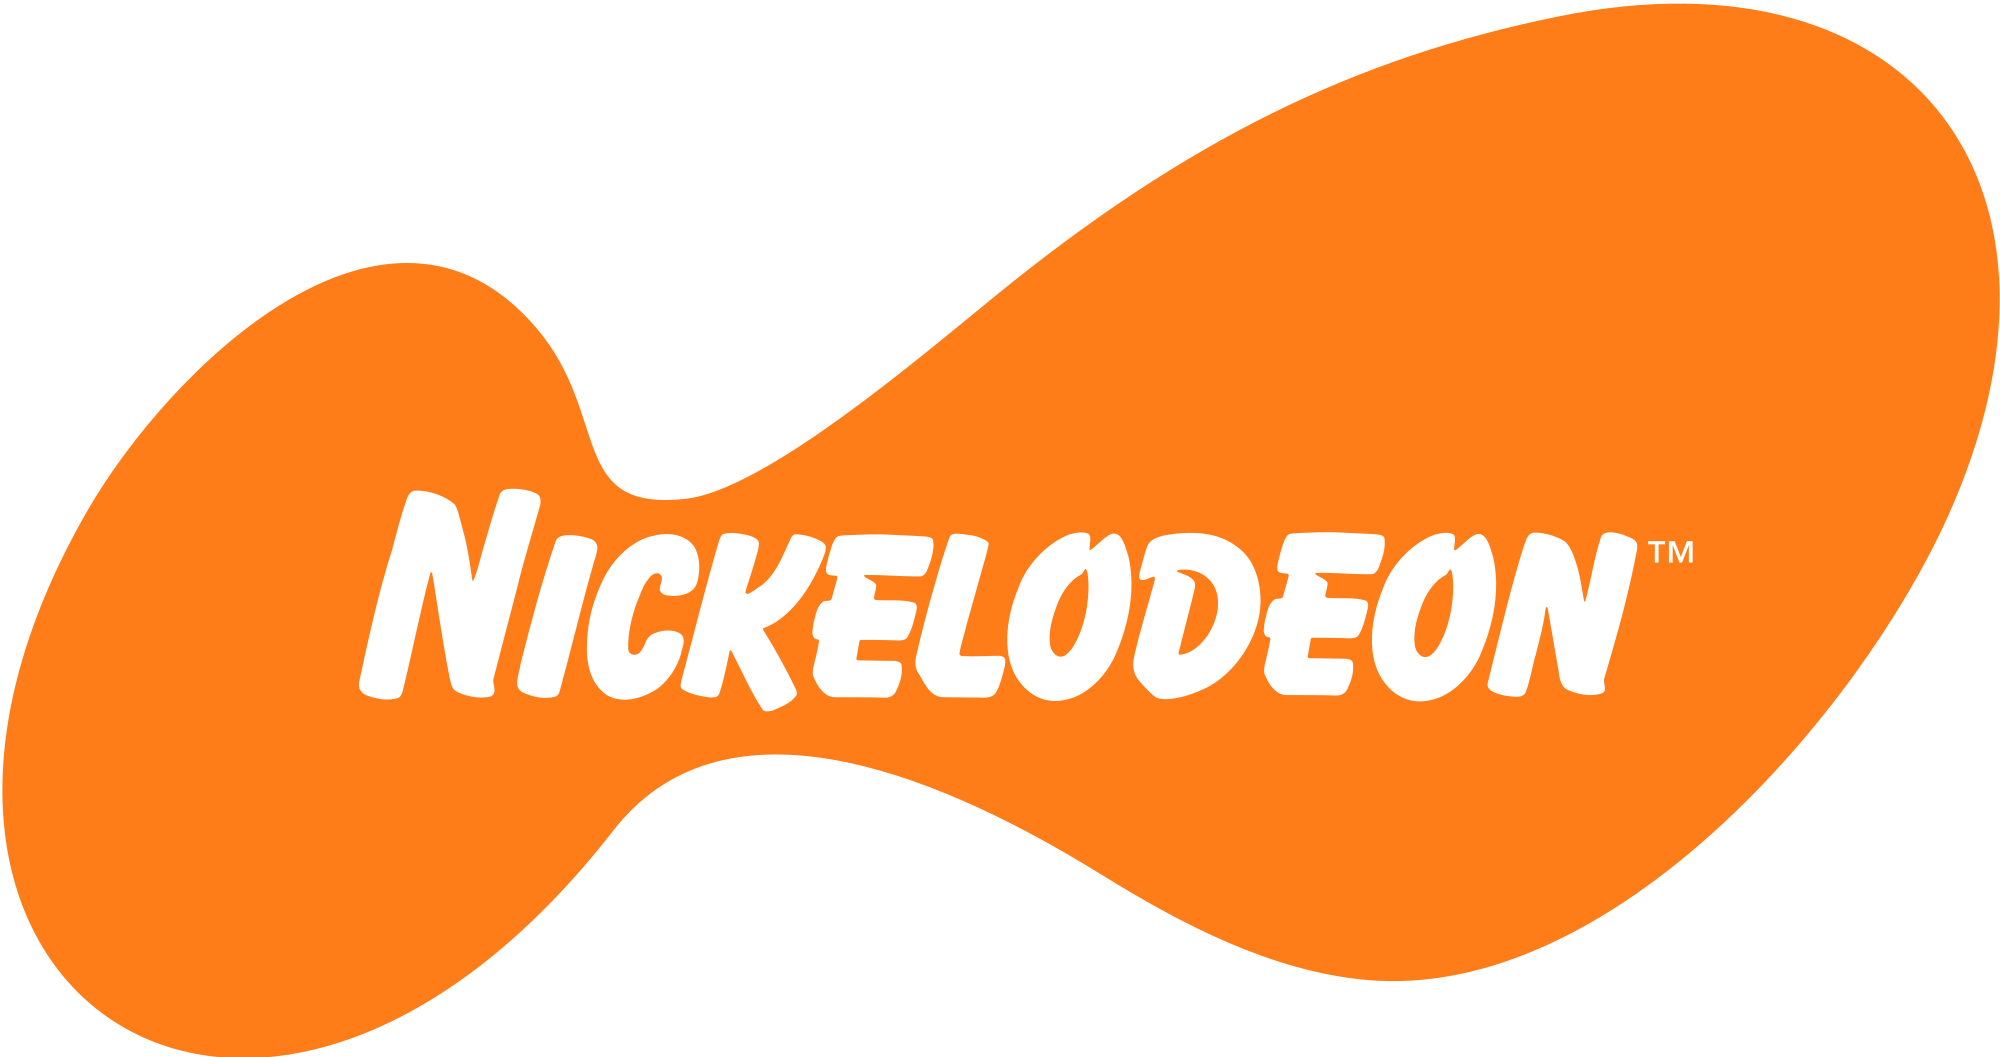 Old Nickelodeon Logo - Nickelodeon old logo.svg